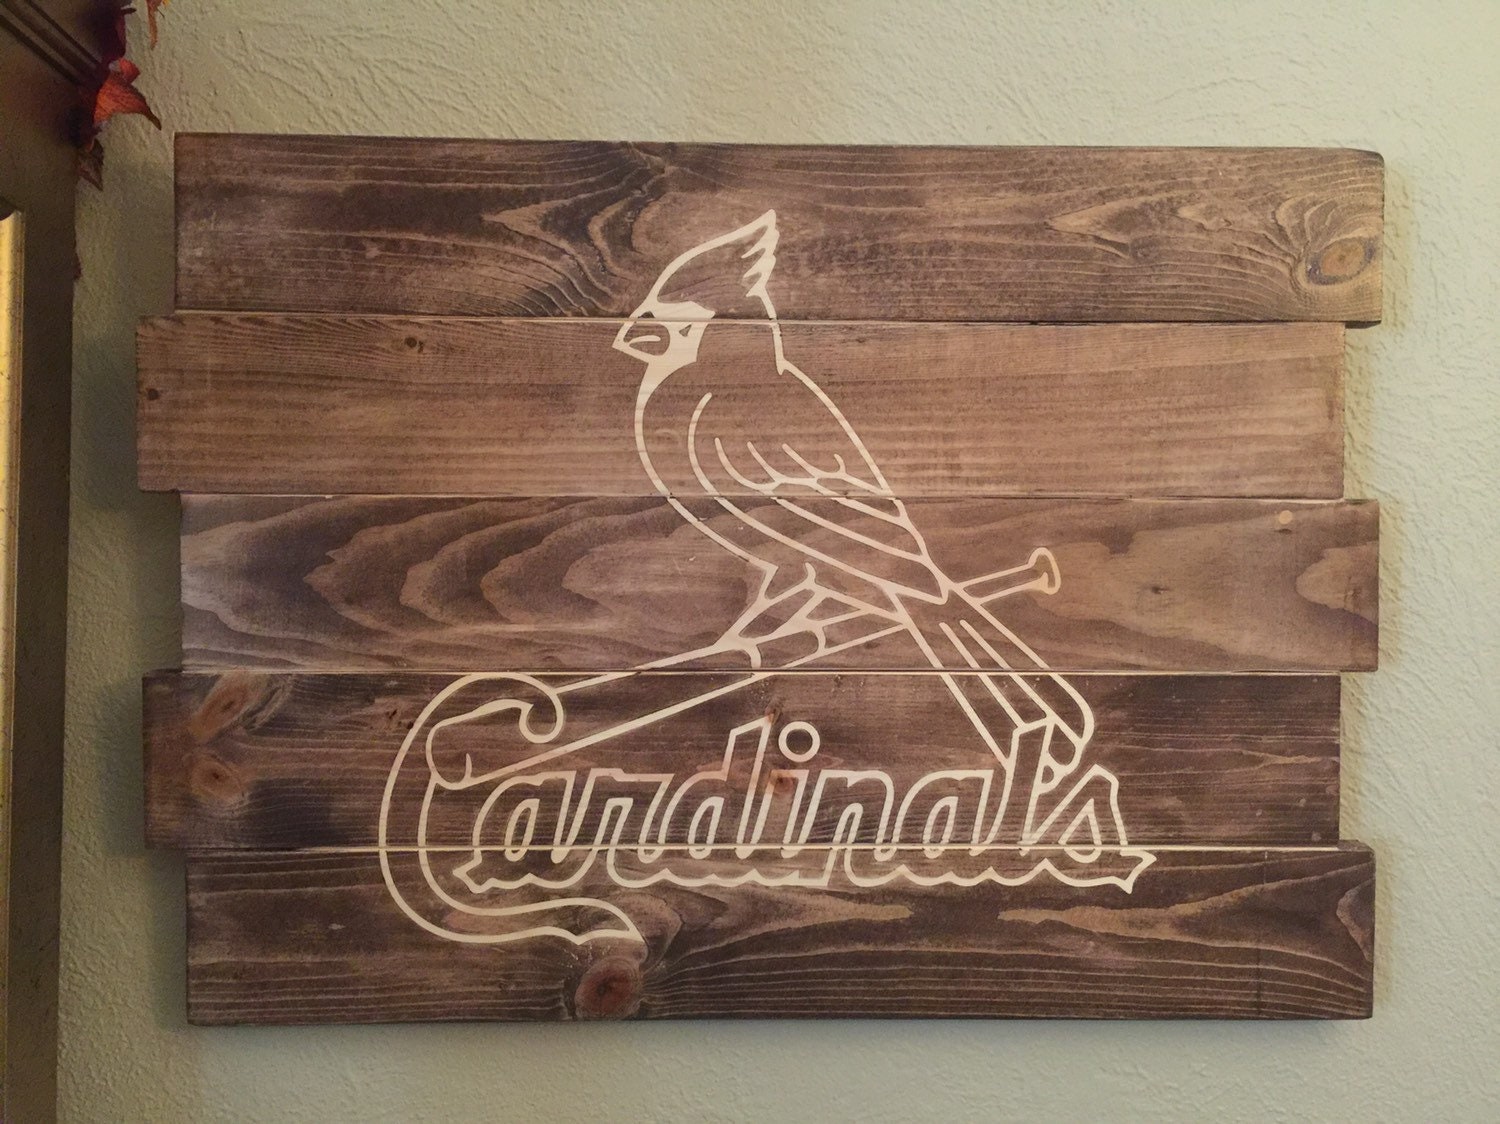 St. Louis Cardinals sluggerbird Wooden Sign 